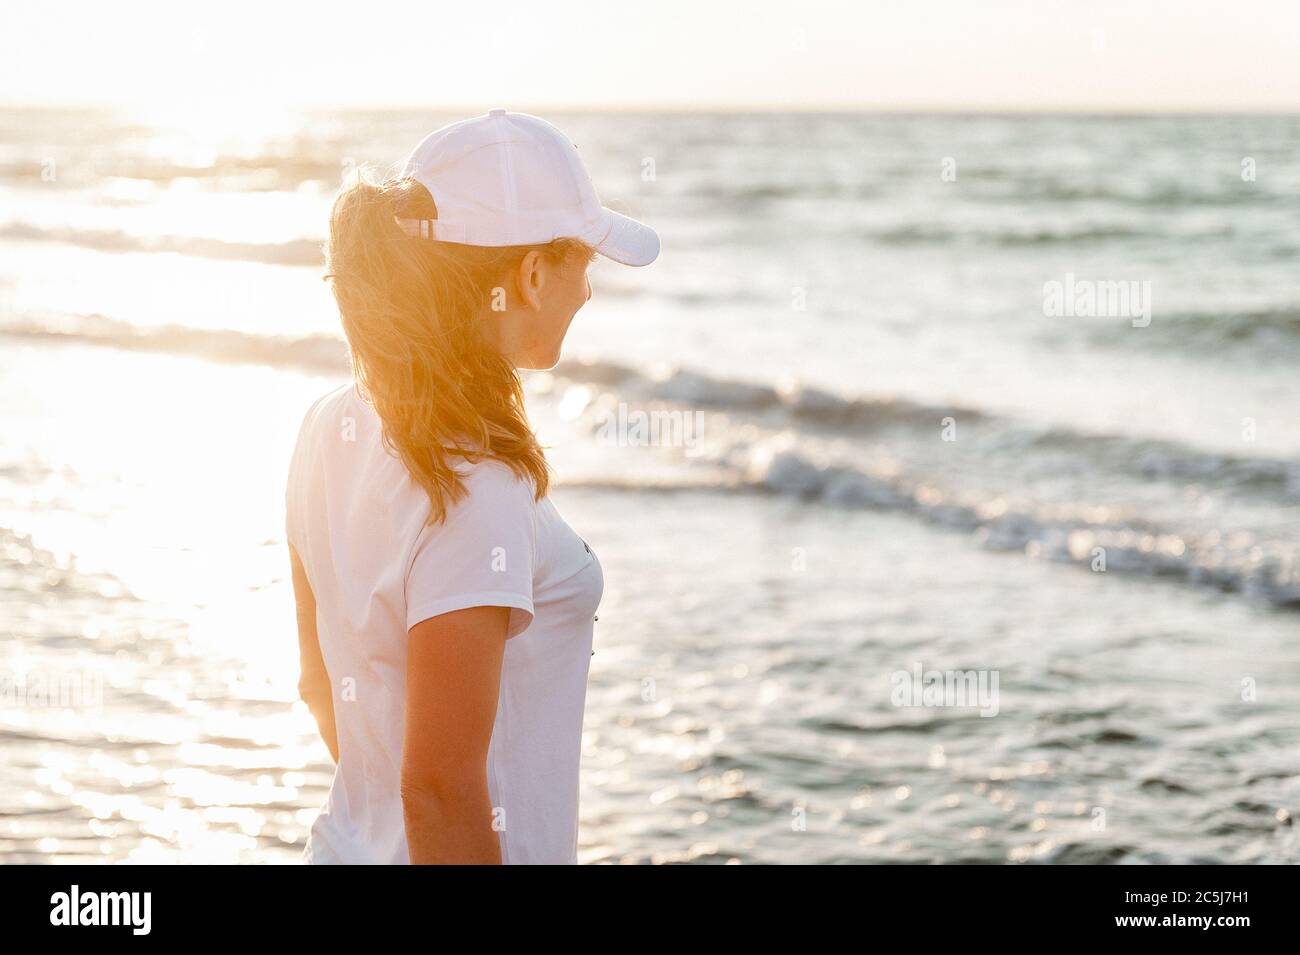 Une jeune athlète contre la mer, dans un T-shirt blanc et une casquette blanche Banque D'Images